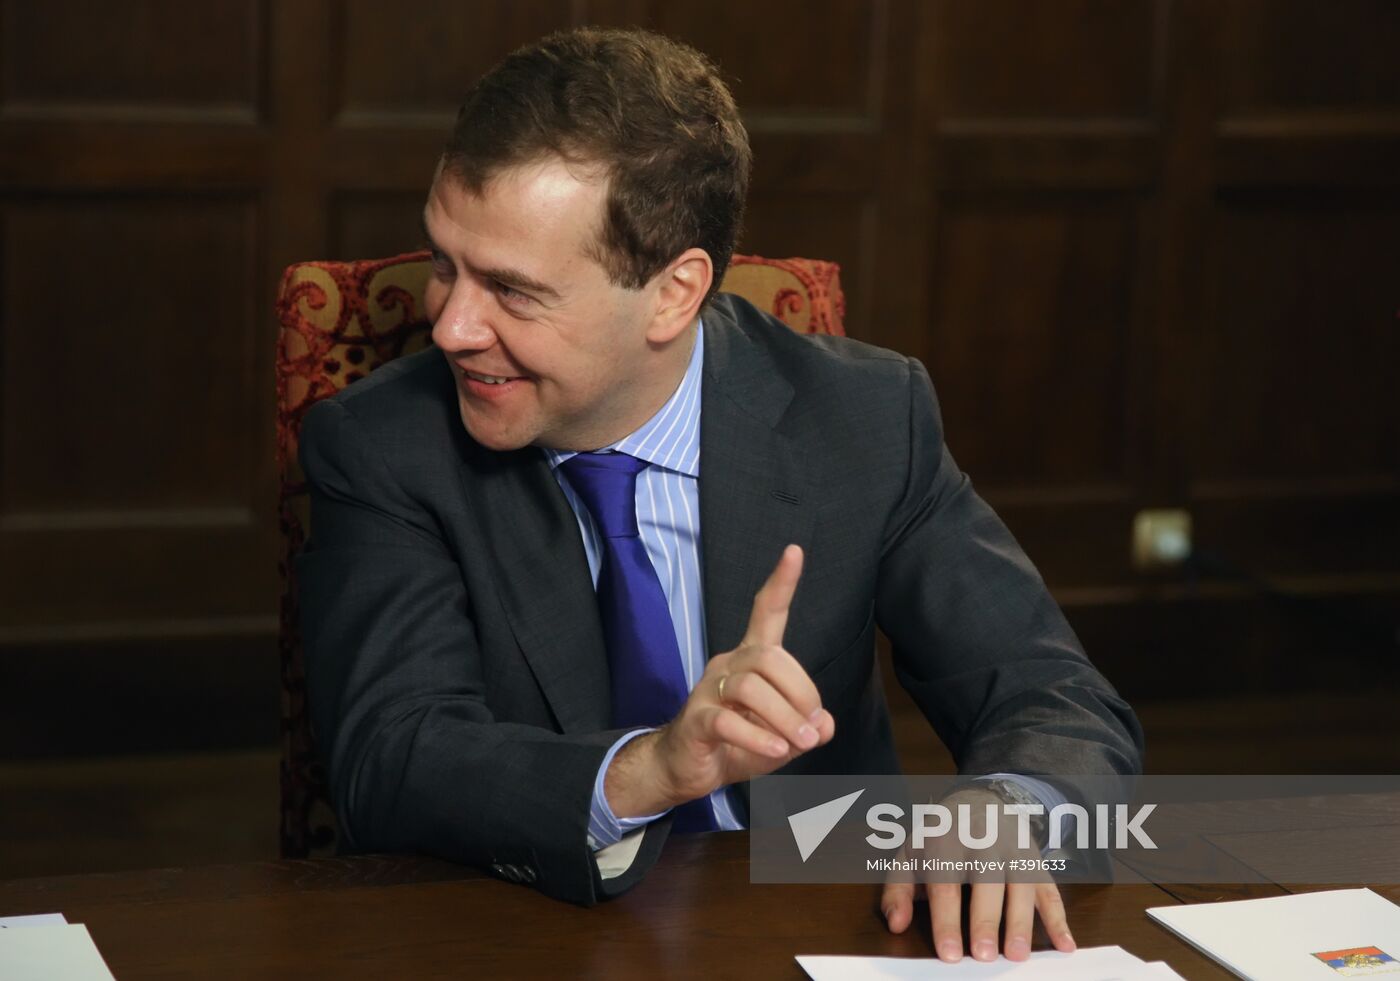 President Medvedev held a number of meetings on May 6, 2009.